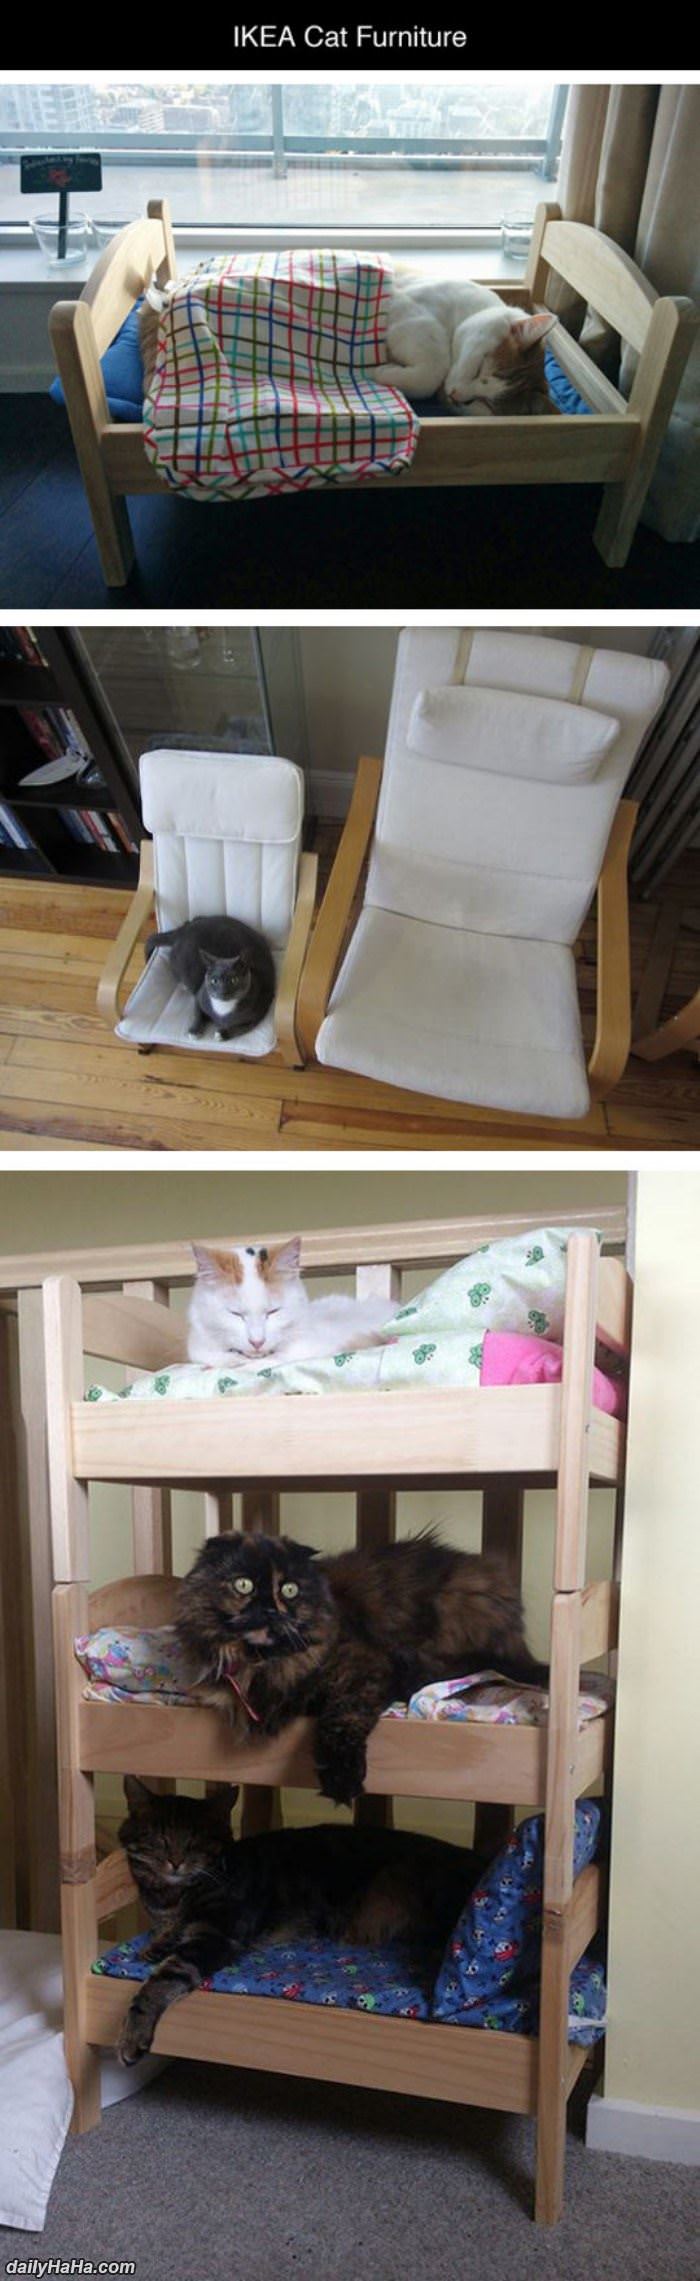 ikea cat furniture funny picture